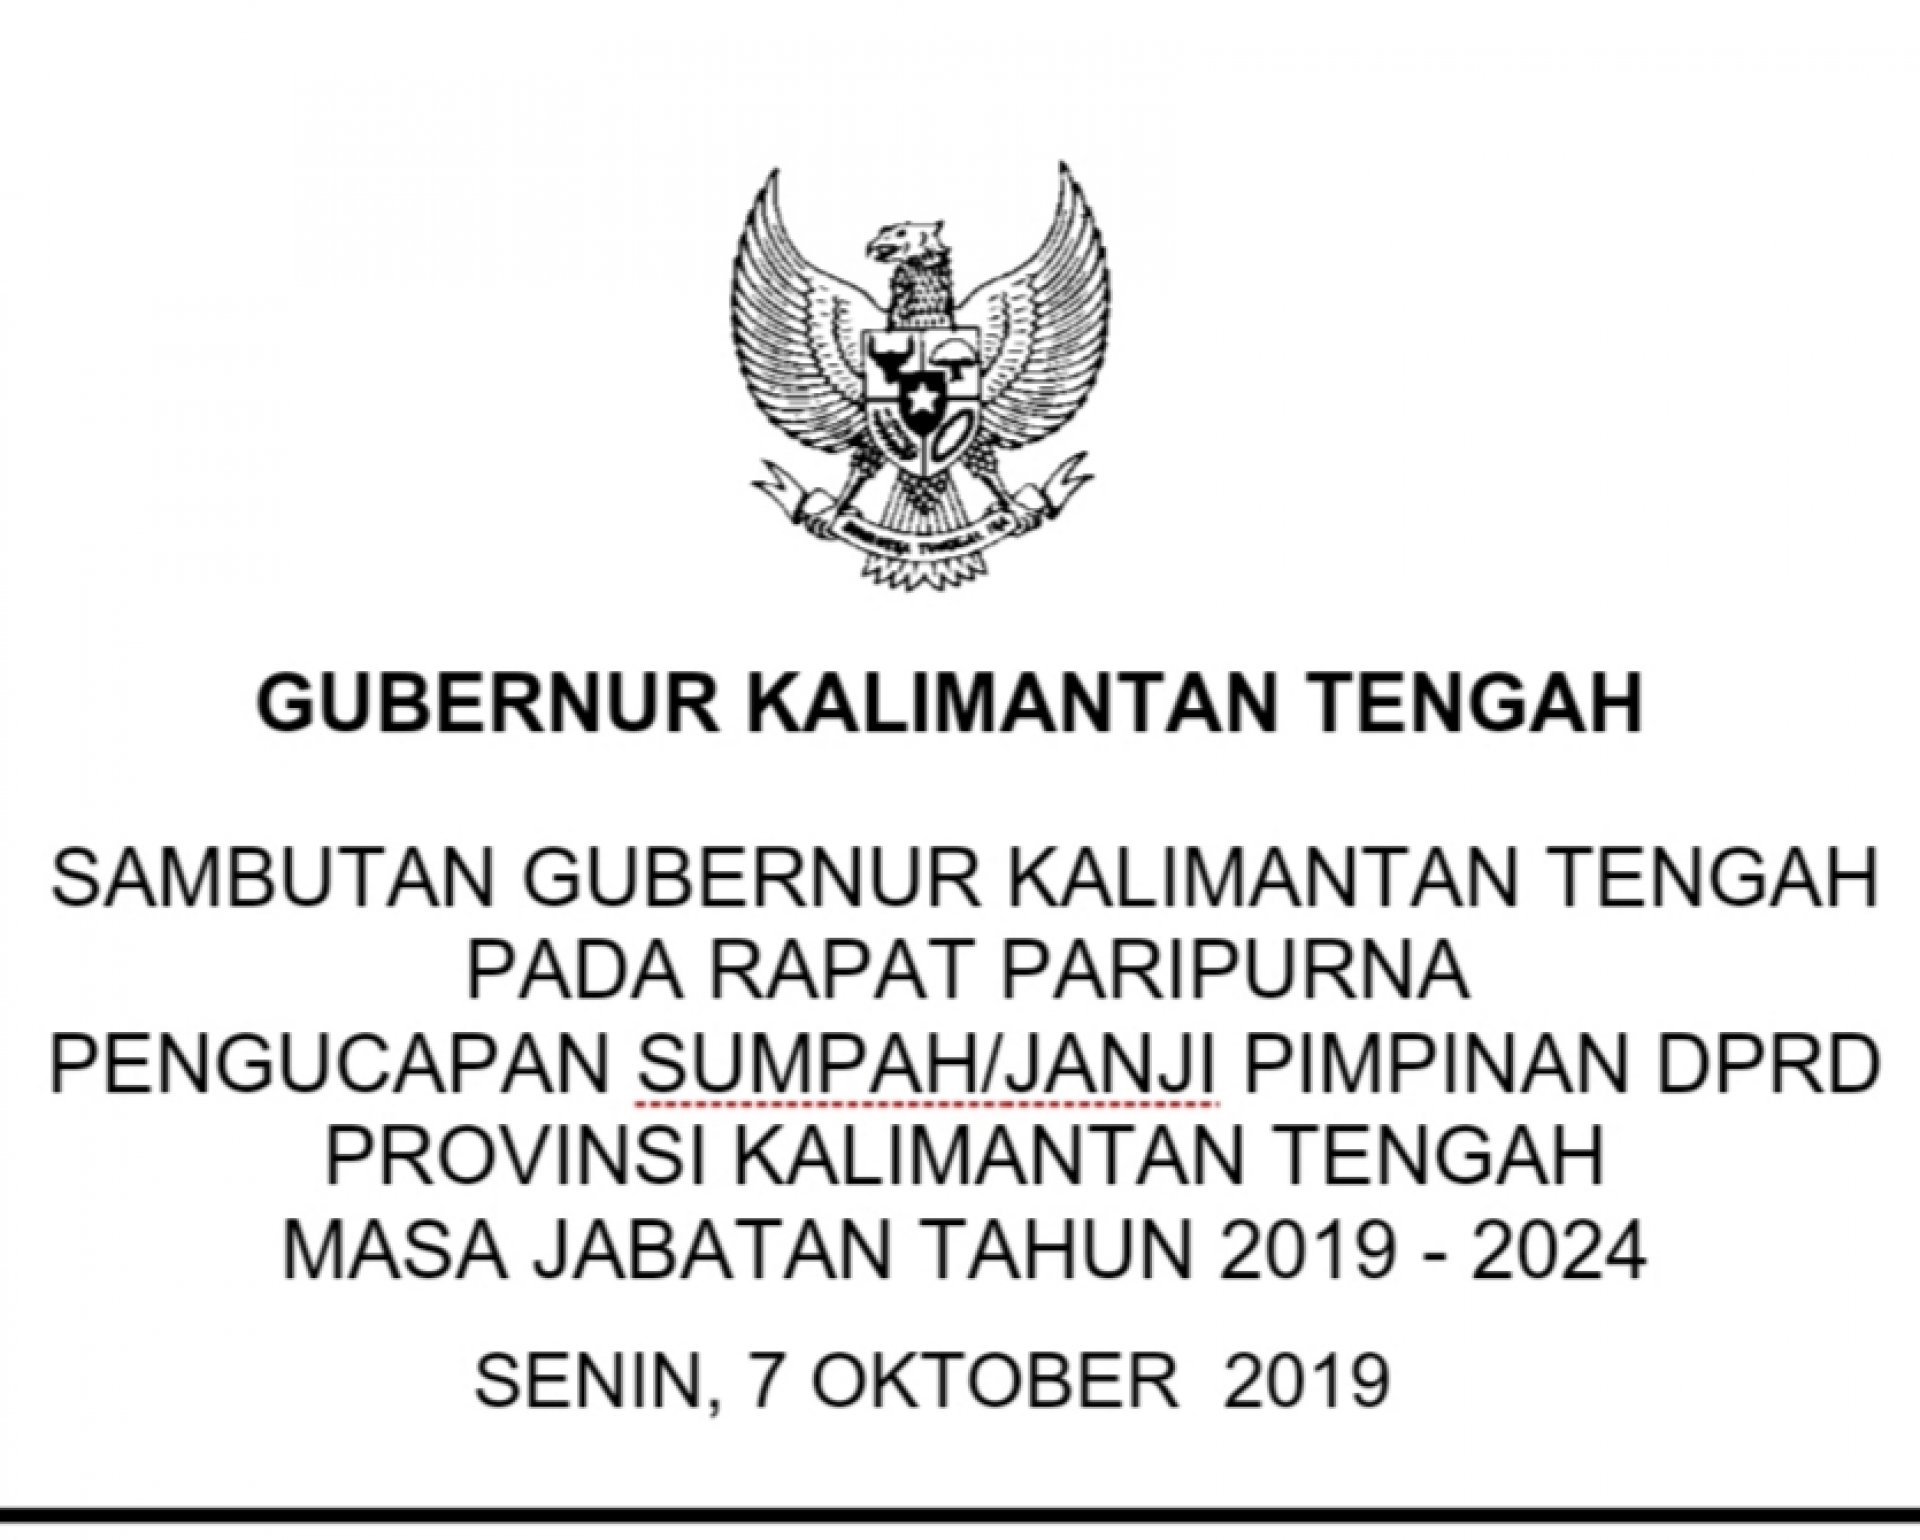 Sambutan Gubernur Kalimantan Tengah pada Acara Rapat Paripurna Pengucapan Sumpah Janji Pimpinan DPRD Provinsi Periode 2019-2024